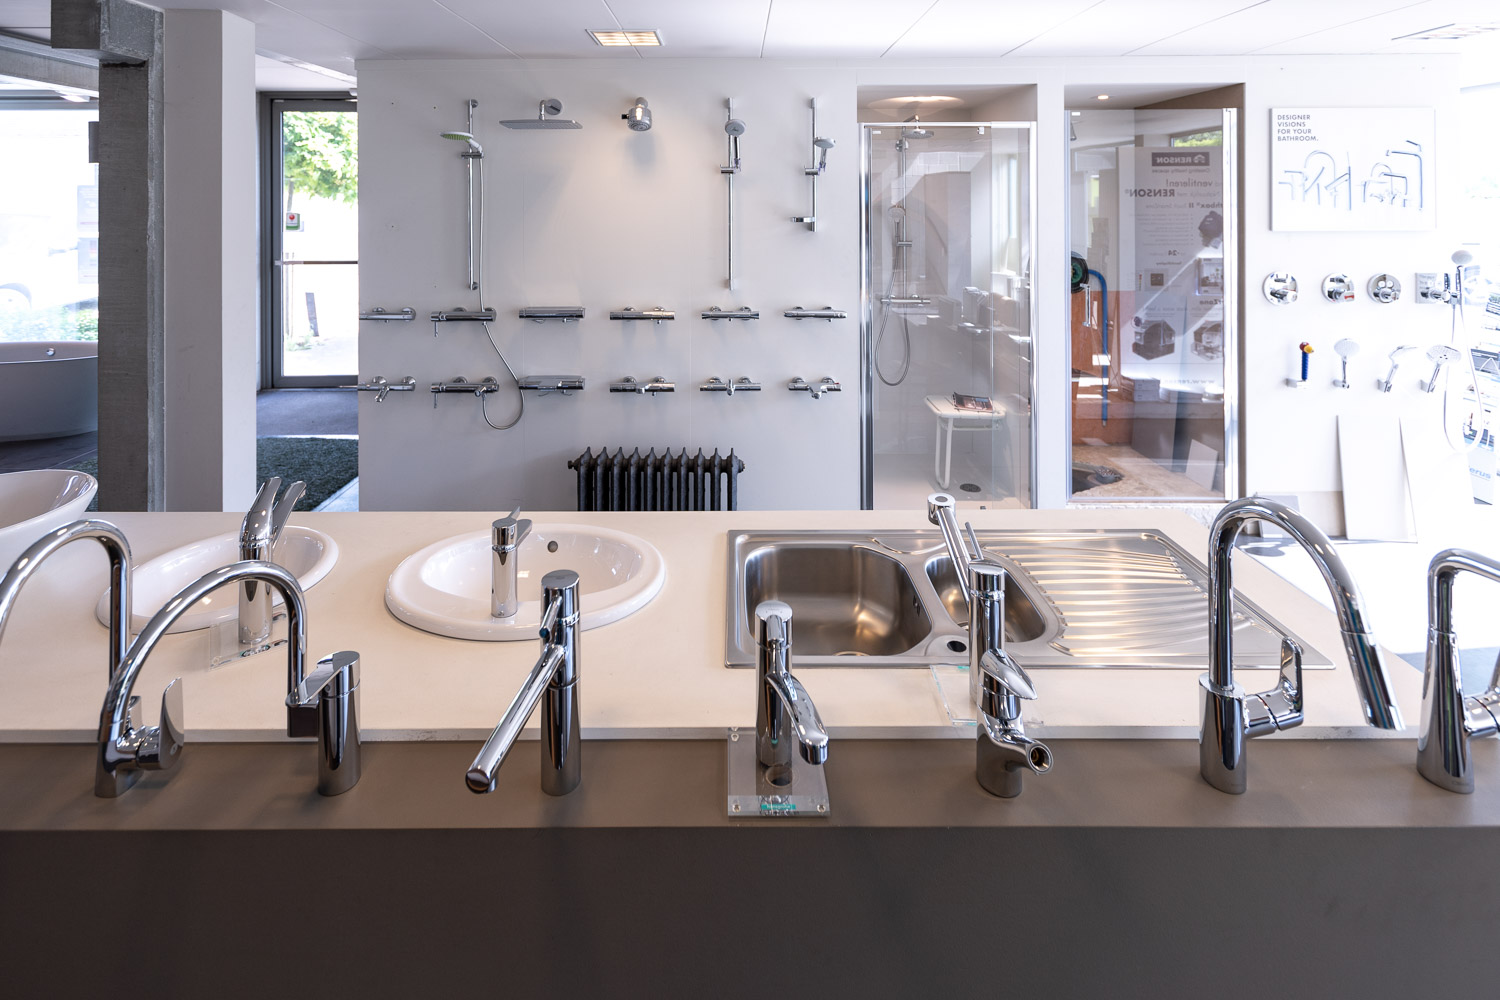 Cnockaert showroom kranen voor badkamers en keukens